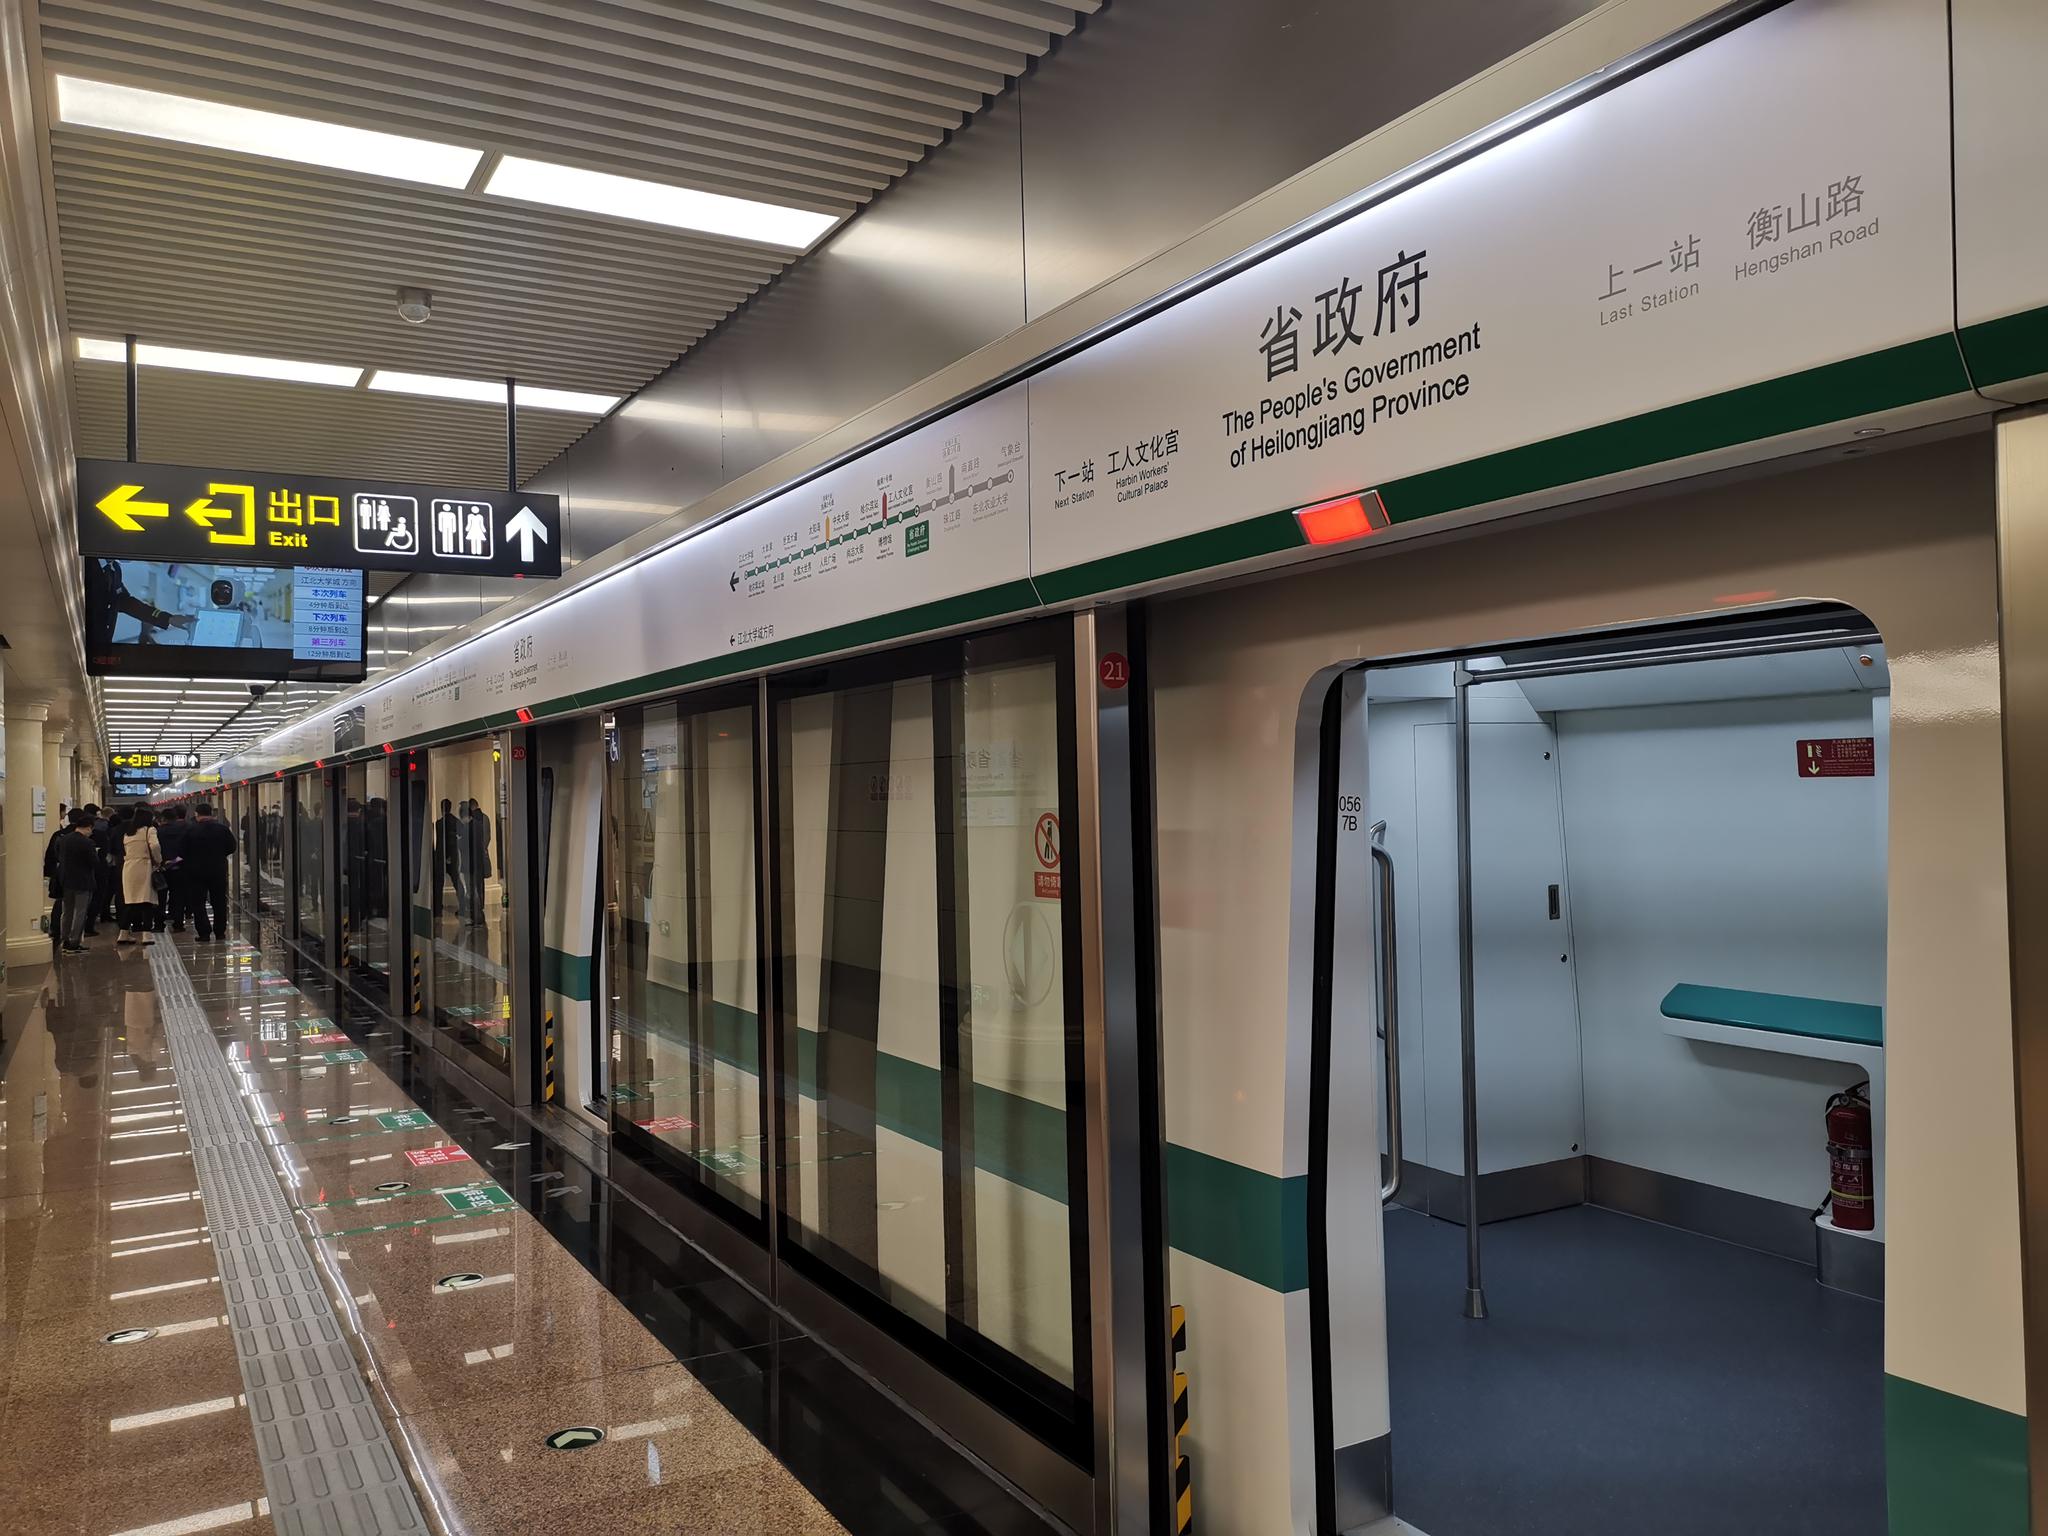 哈尔滨地铁厉害了！单日客流创历史新高76.48万人次！客流强度居东北三省第二，全国第九！